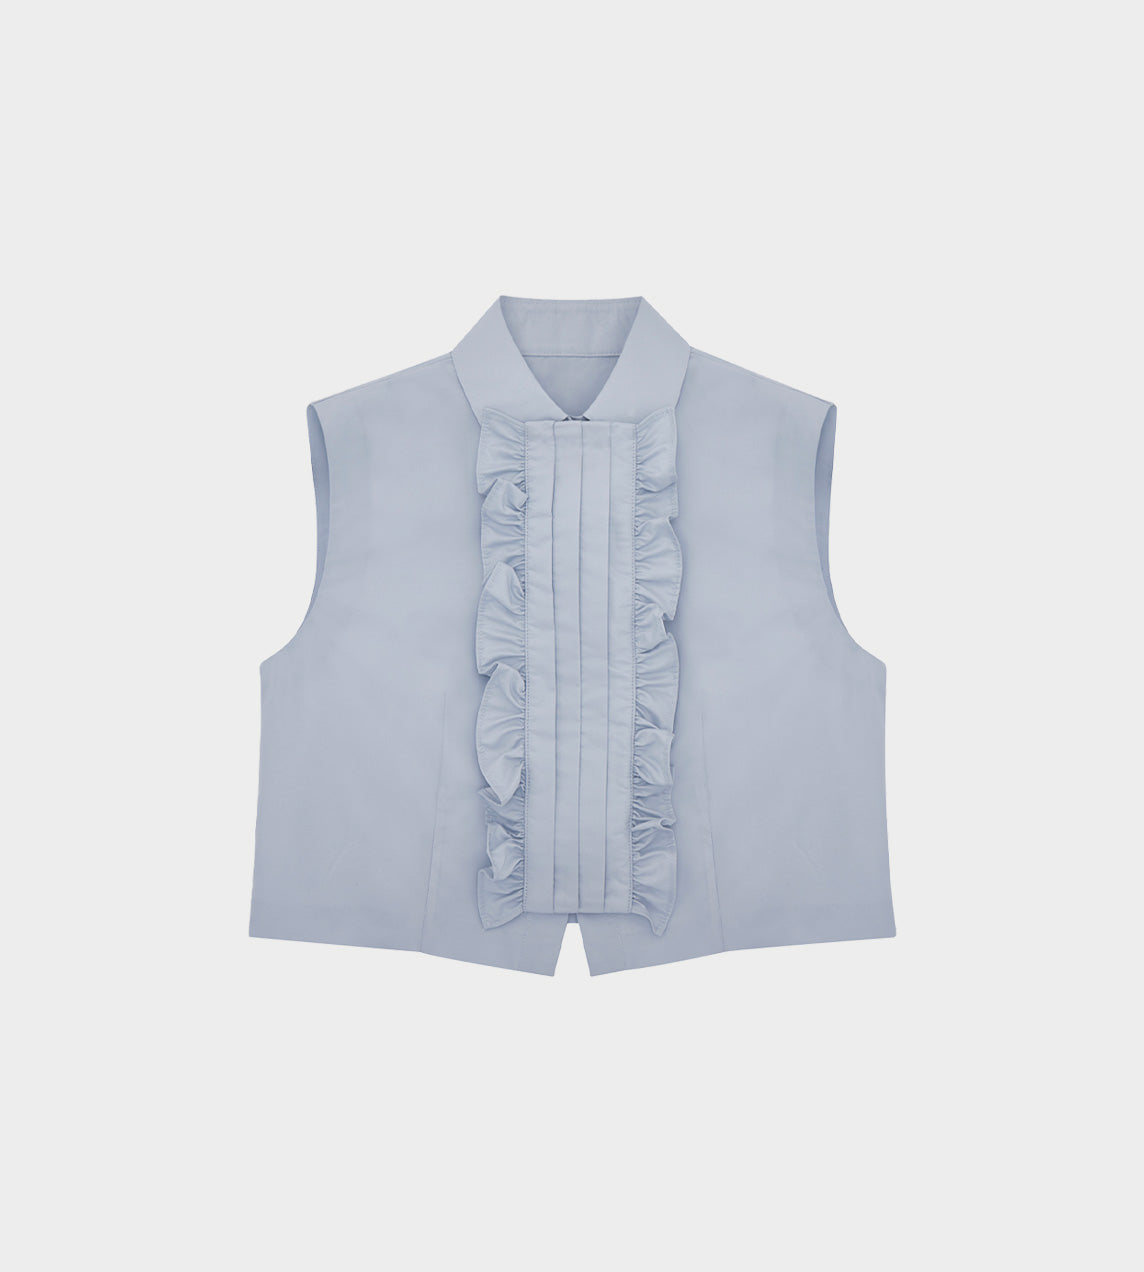 ShuShu/Tong - Ruffle Front Sleeveless Shirt Grey